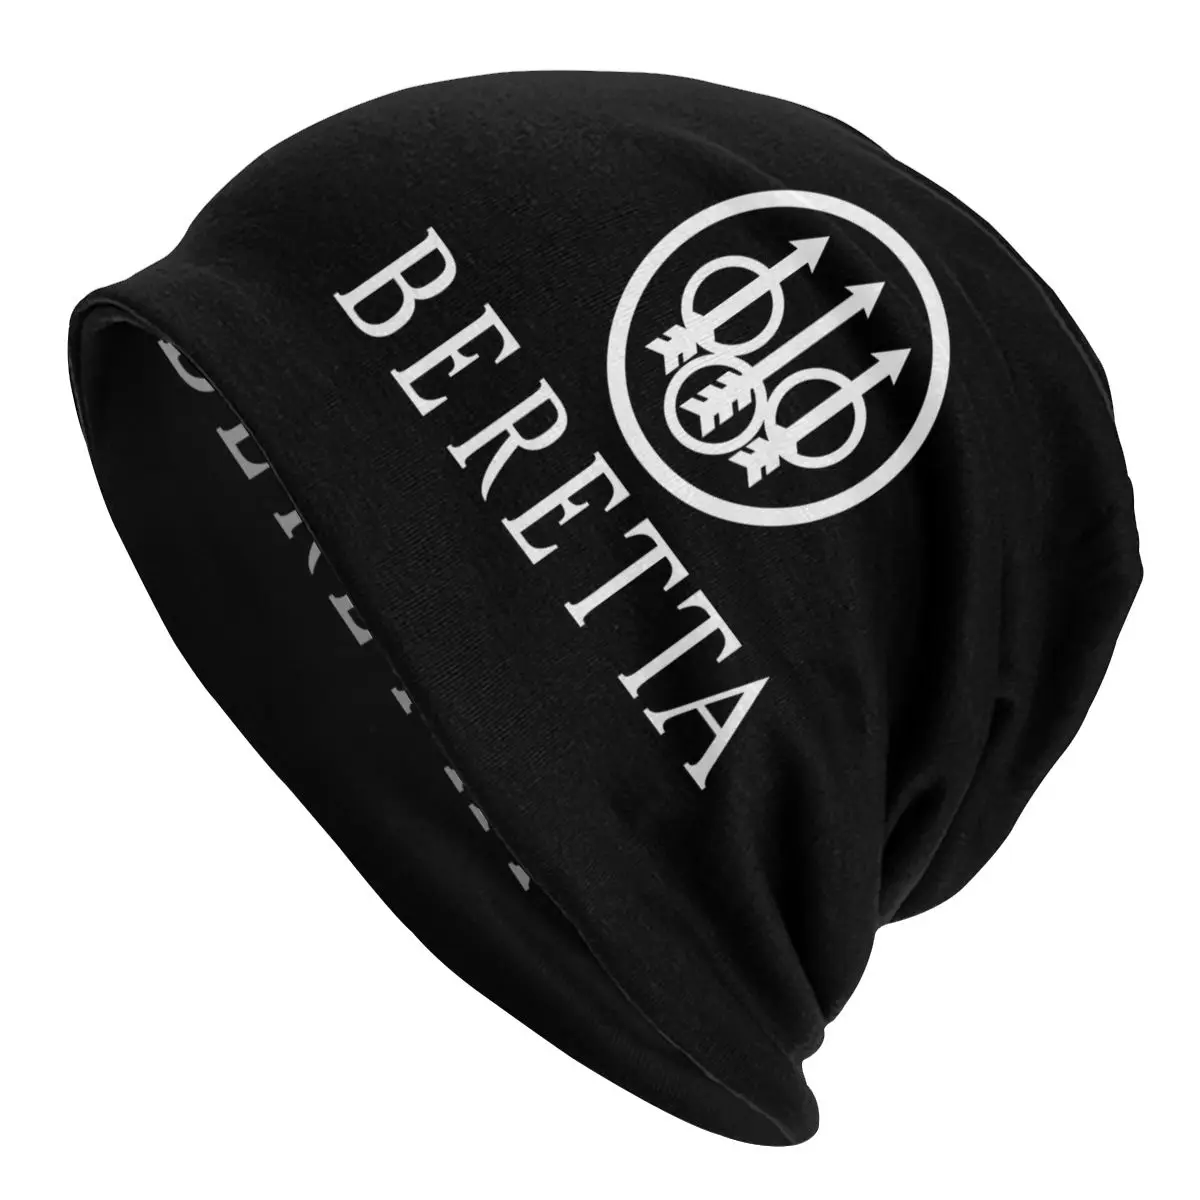 Beretta Bonnet Homme Cool Knitted Hat For Women Men Autumn Winter Warm Military Gun Lover Beanies Caps